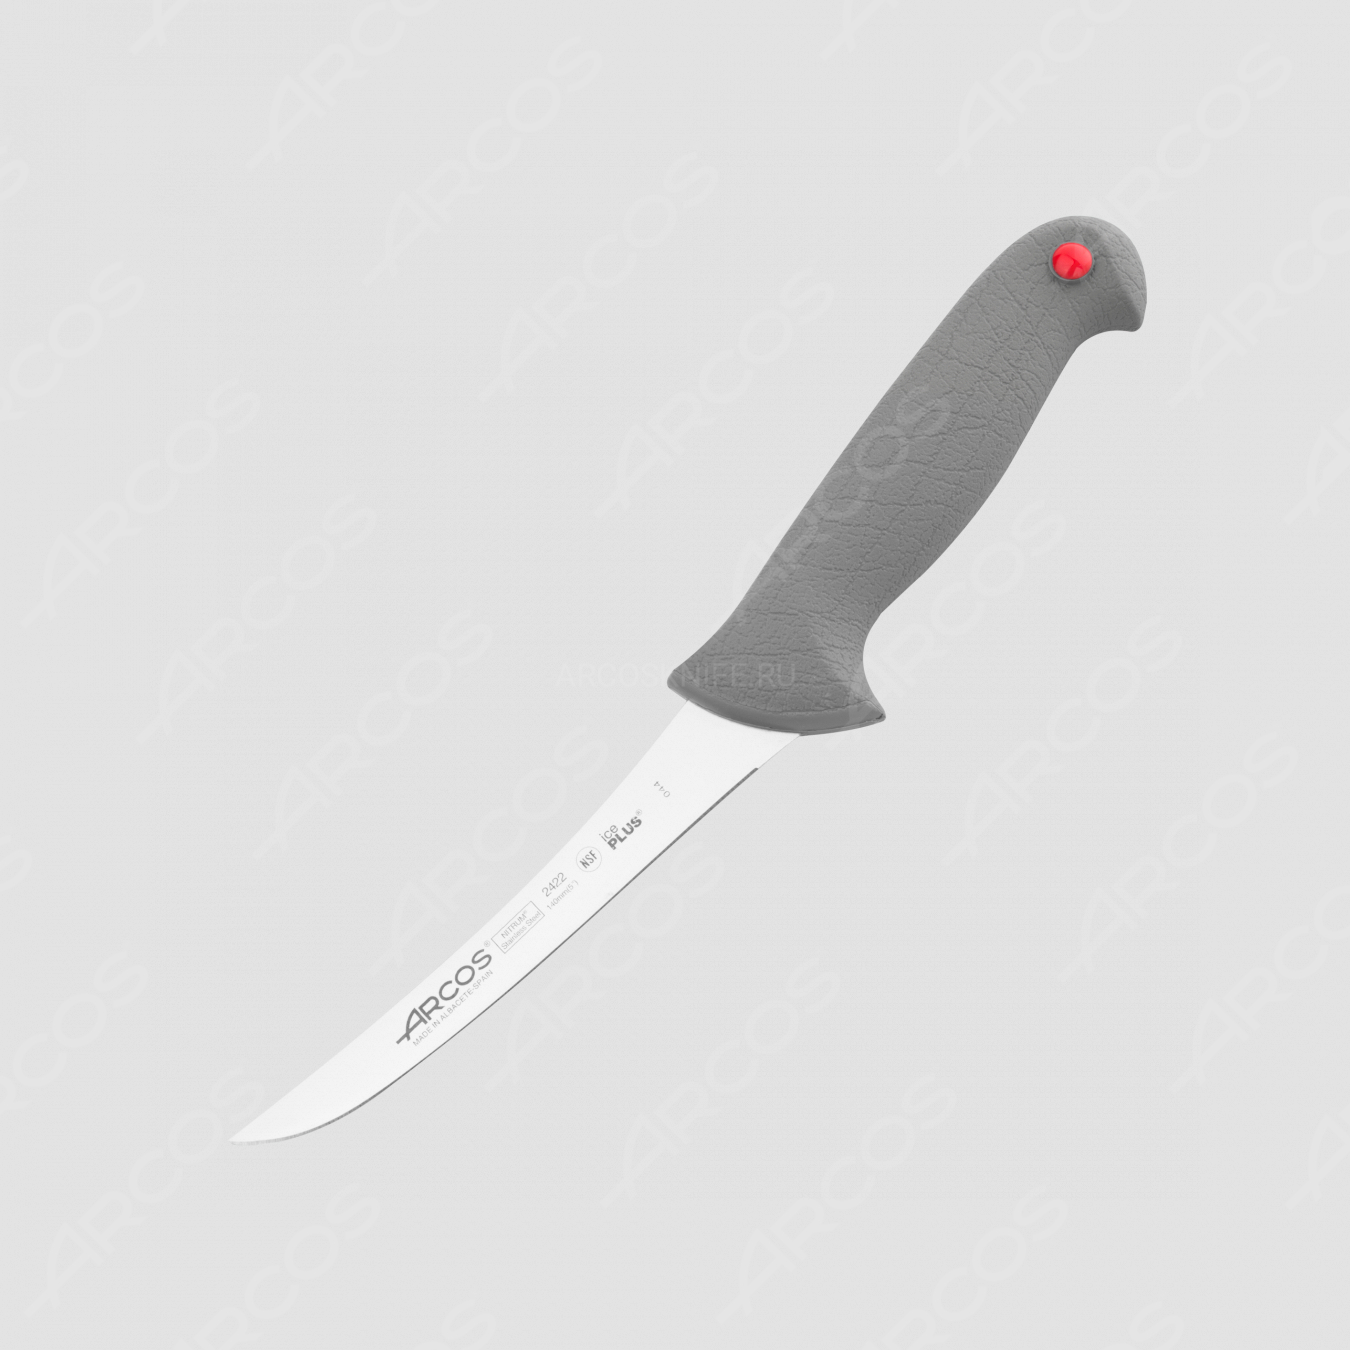 Нож кухонный обвалочный 14 см, серия Colour-prof, ARCOS, Испания